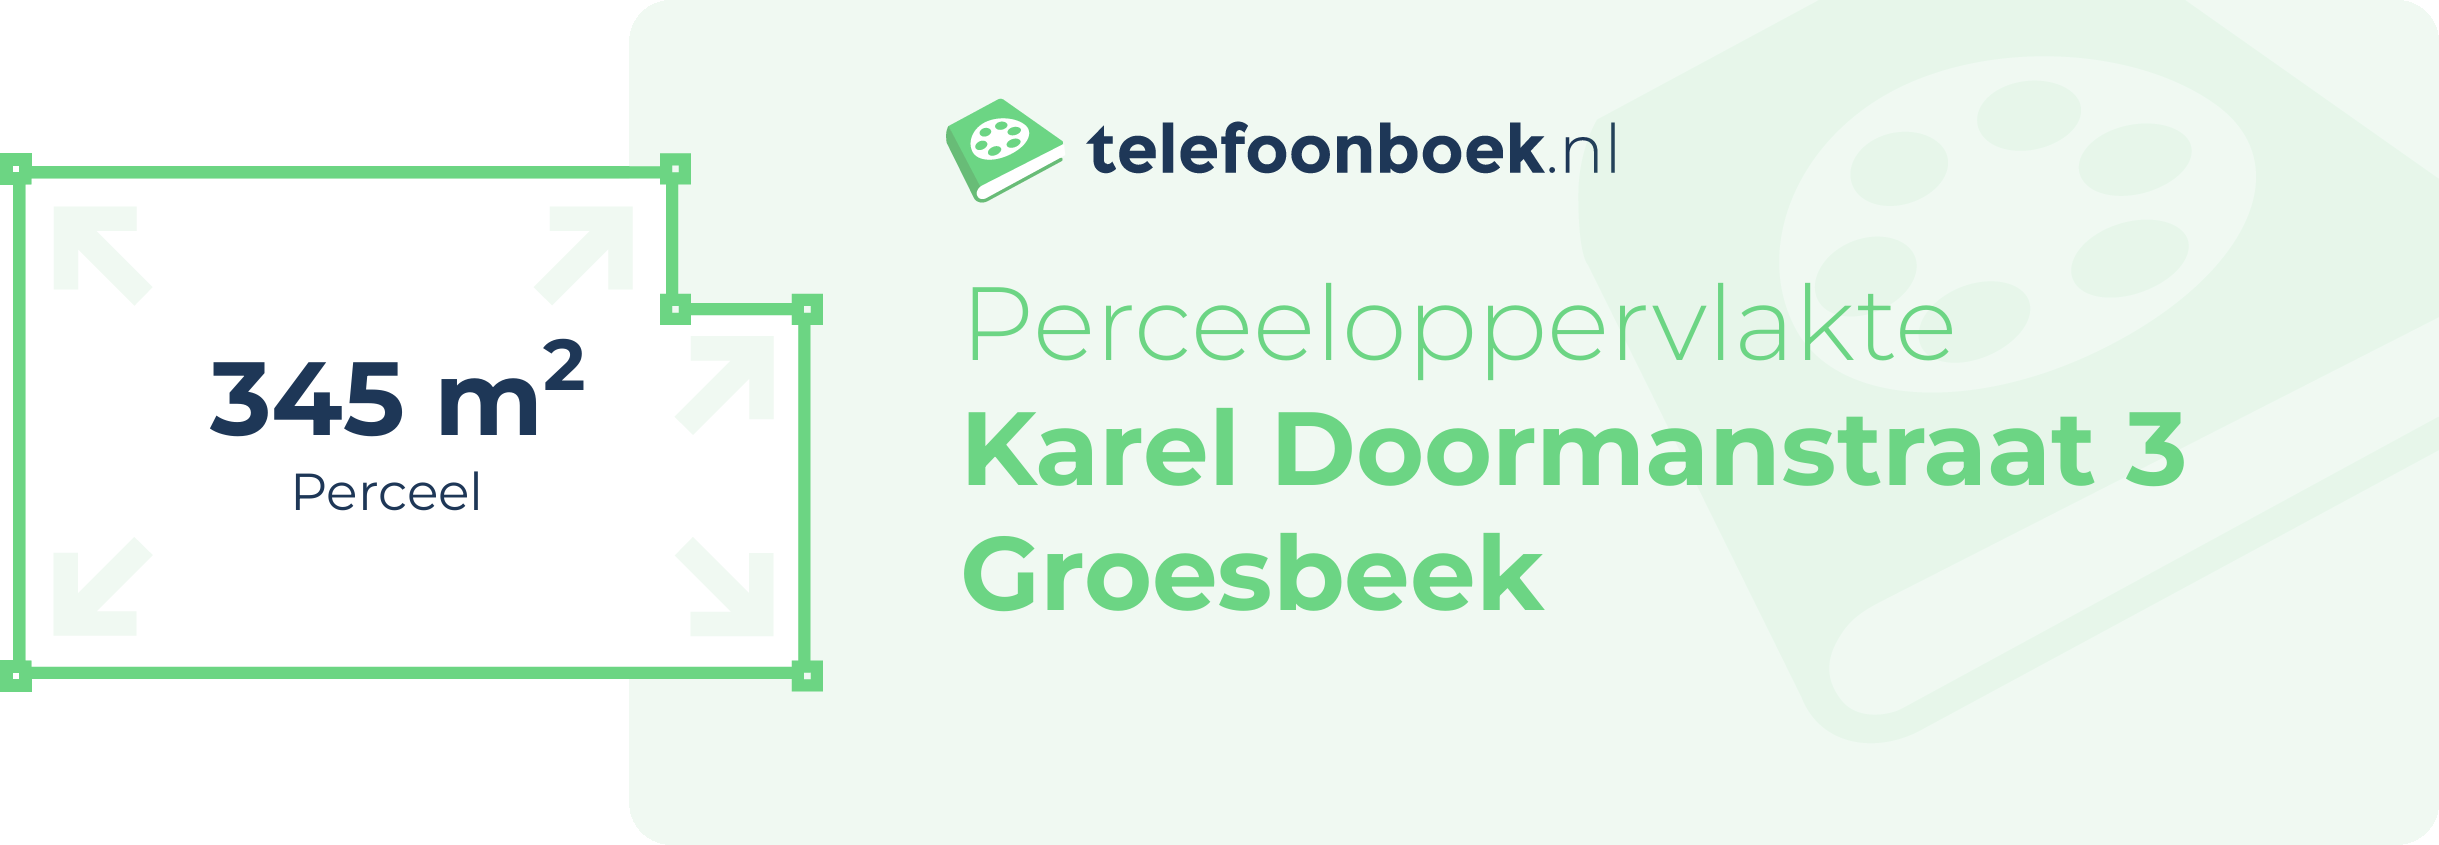 Perceeloppervlakte Karel Doormanstraat 3 Groesbeek